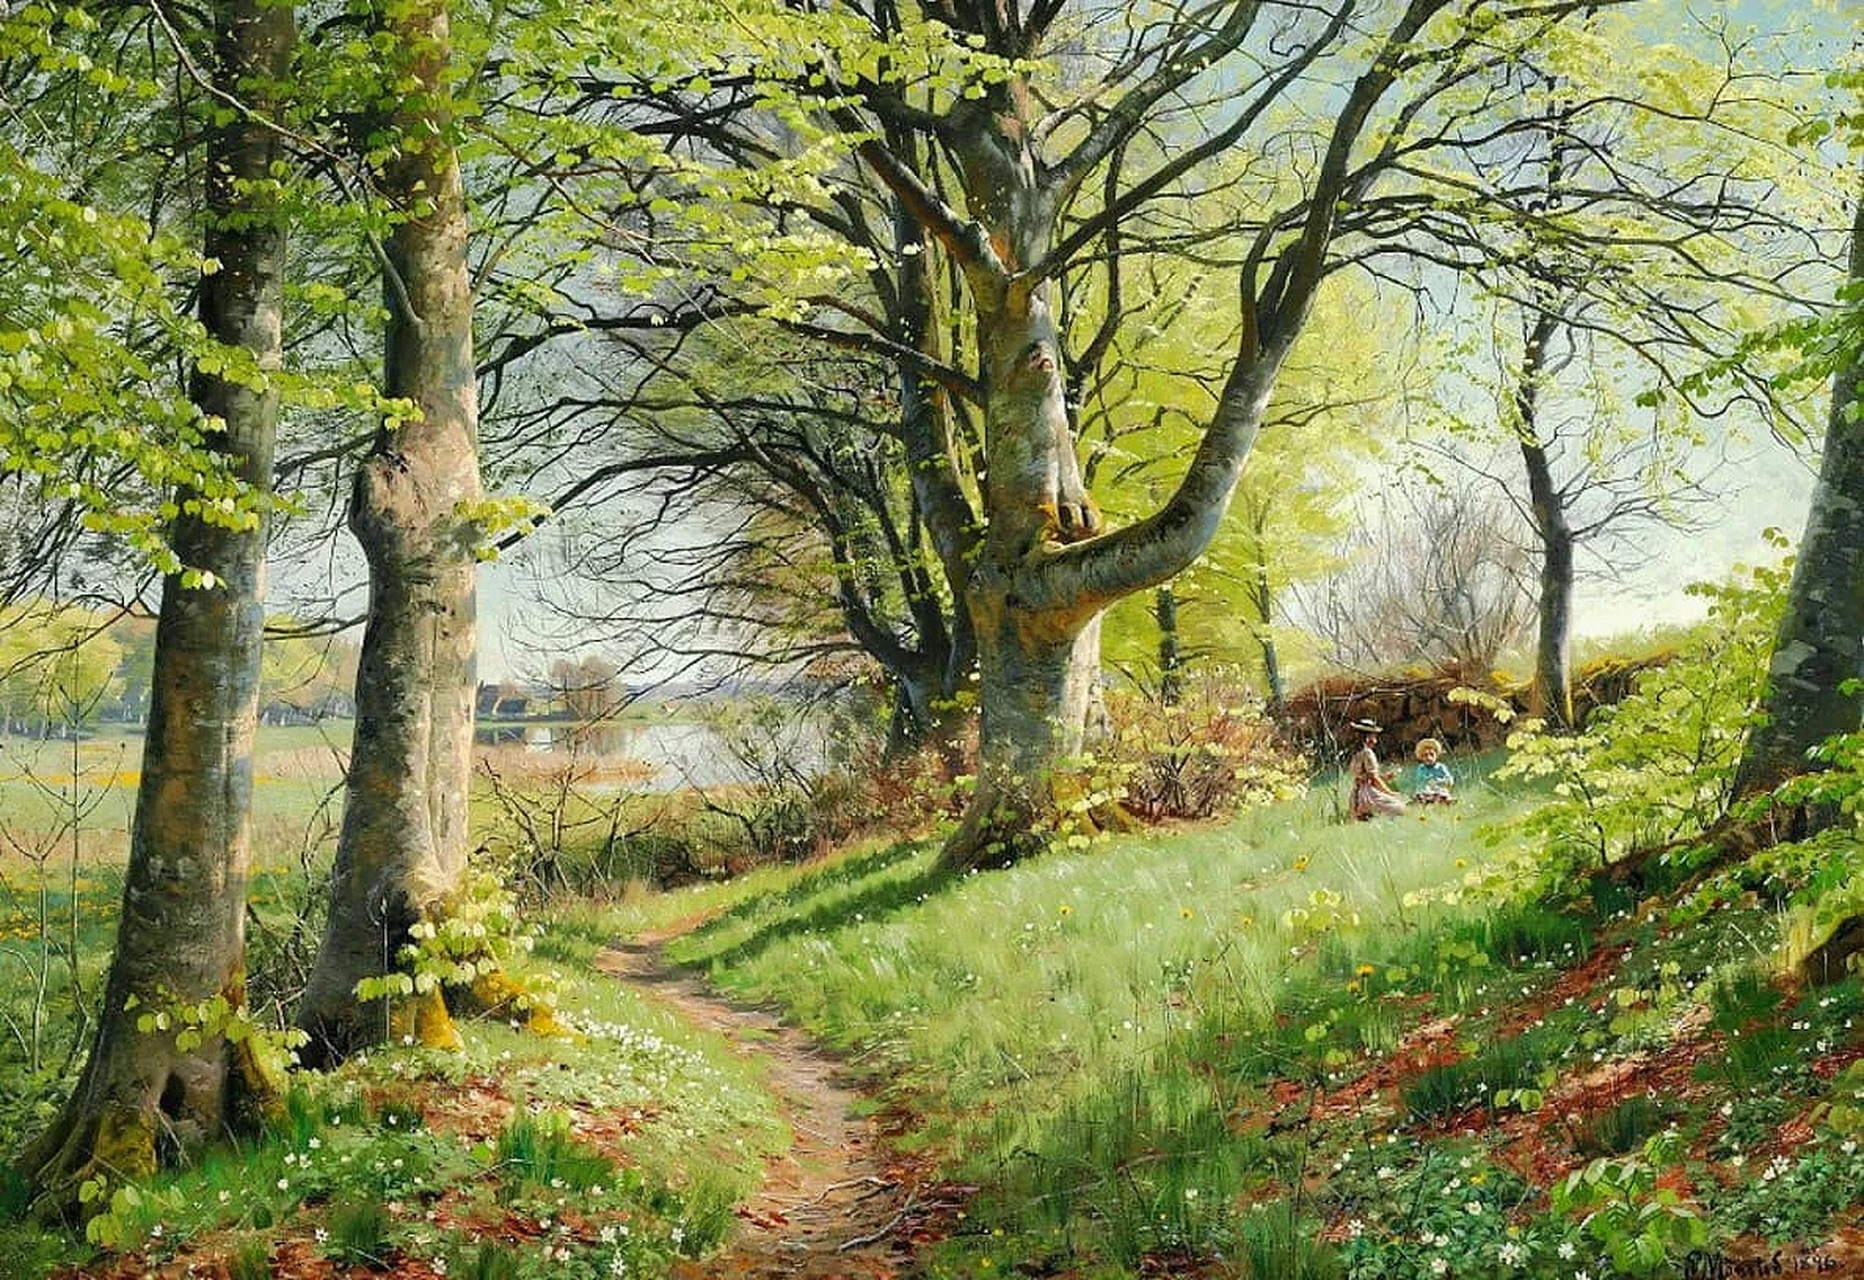 平静与安然的大自然 ——彼得·莫克·蒙森德,丹麦风景油画家